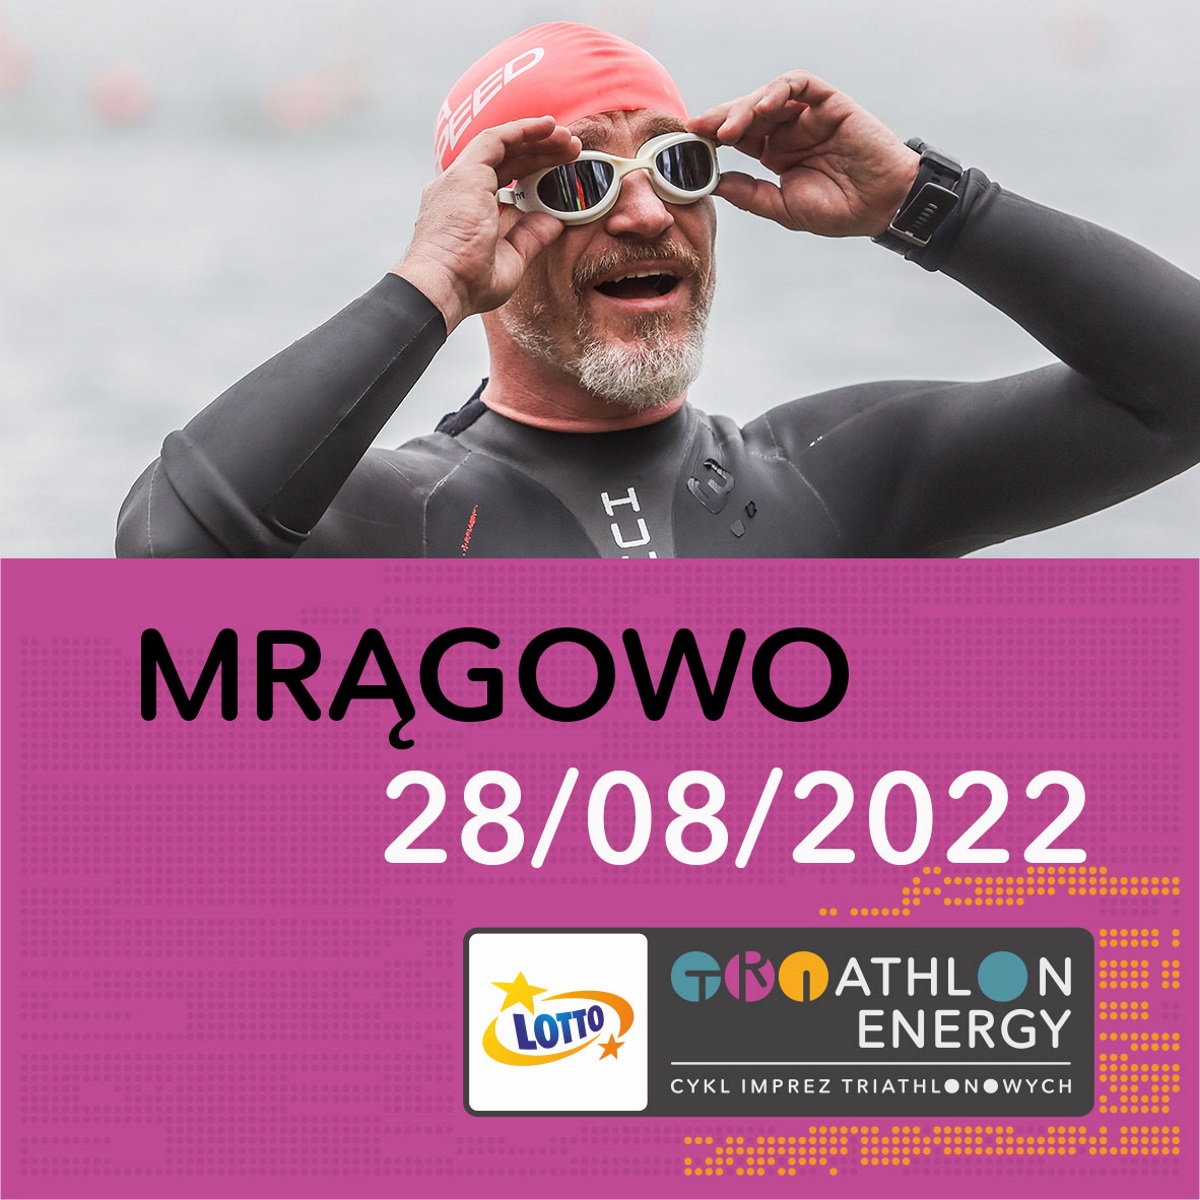 Mragowo LOTTO Triathlon Energy 2022 1